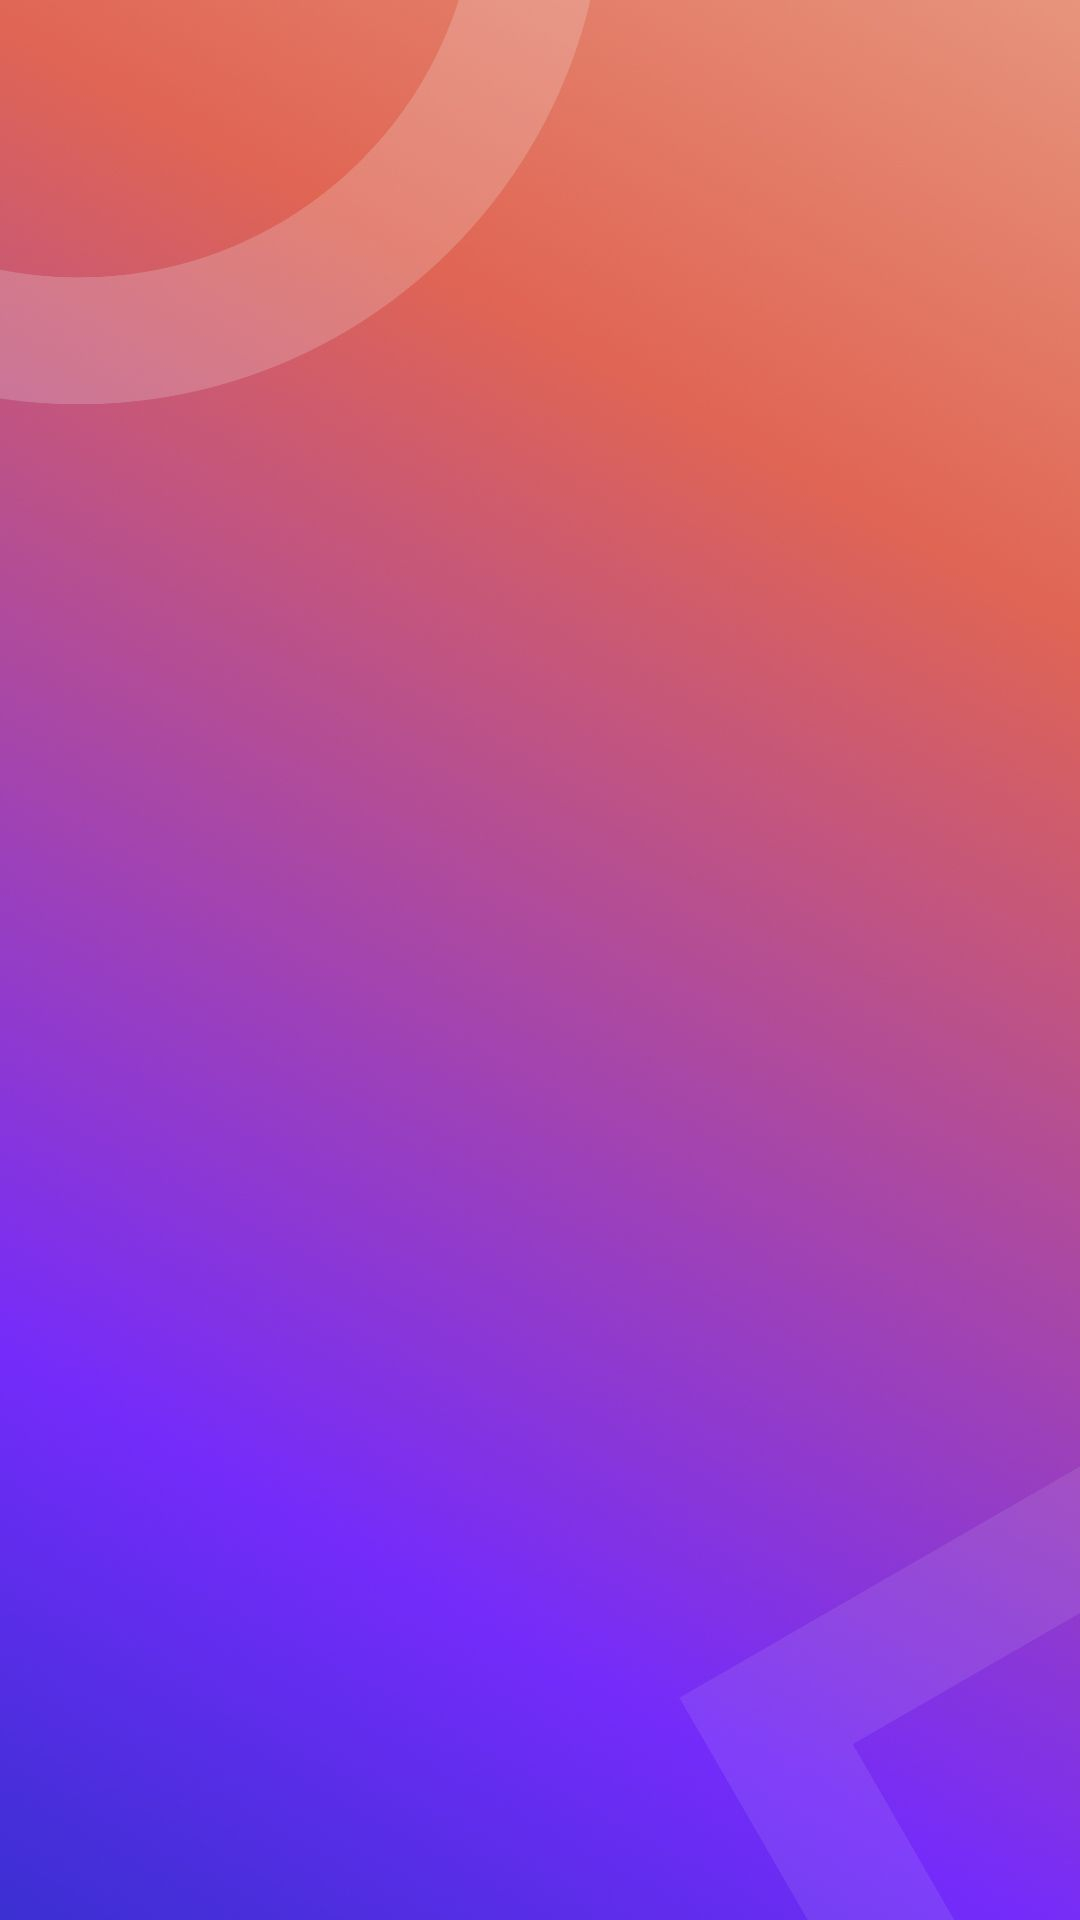 1080x1920 Ubuntu iPhone Wallpapers